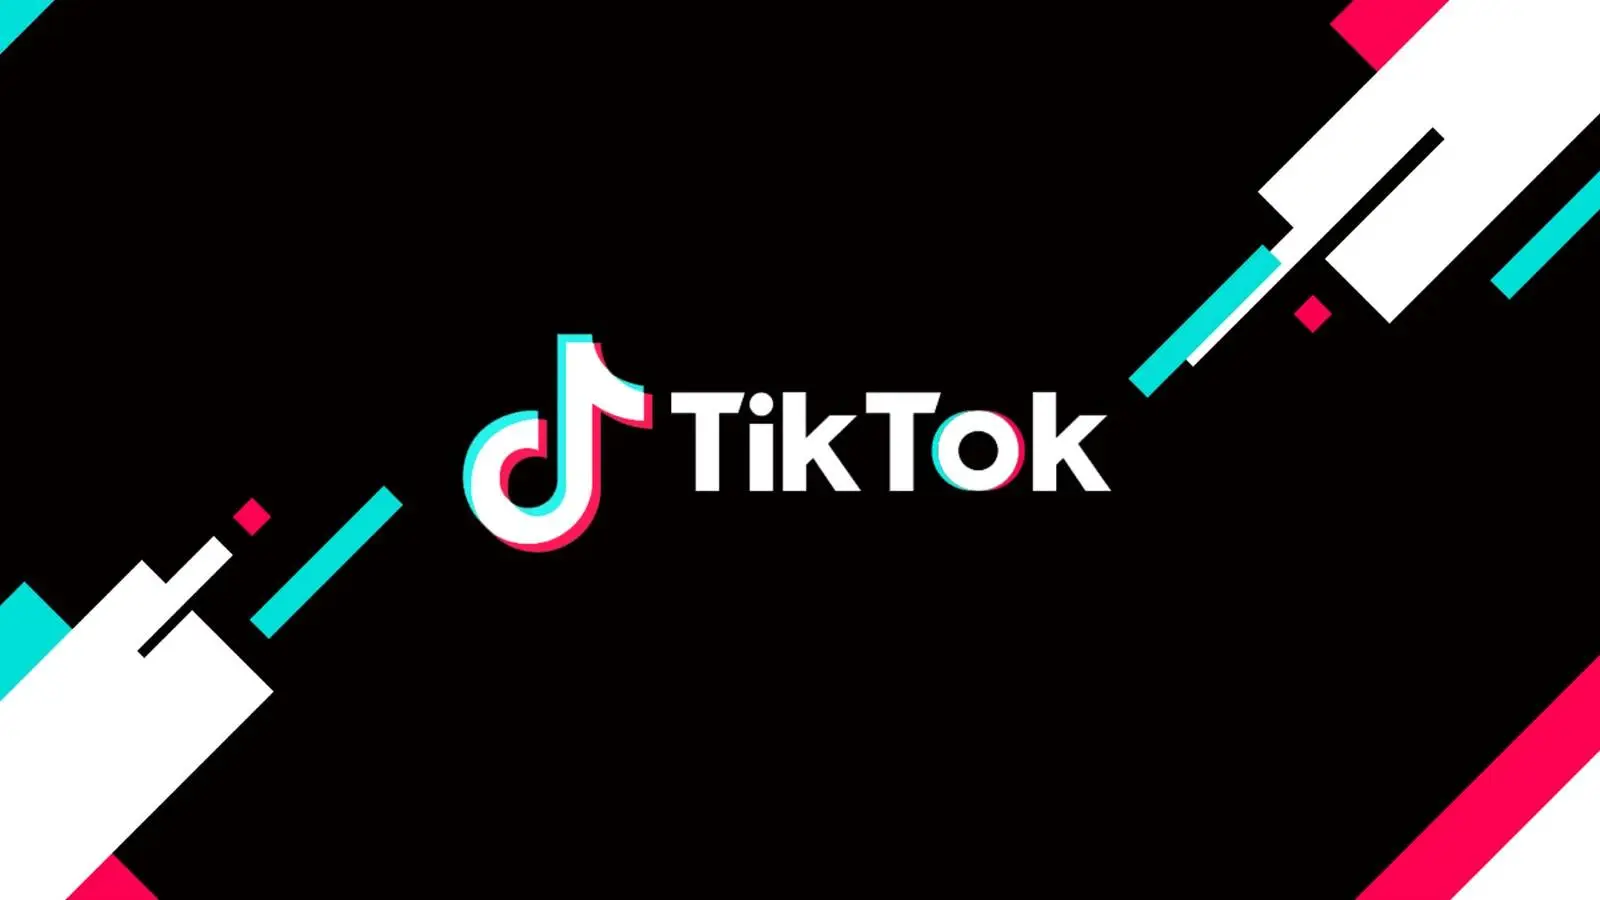 TikTok ha annunciato ufficialmente il lancio di TikTok Now per gli utenti